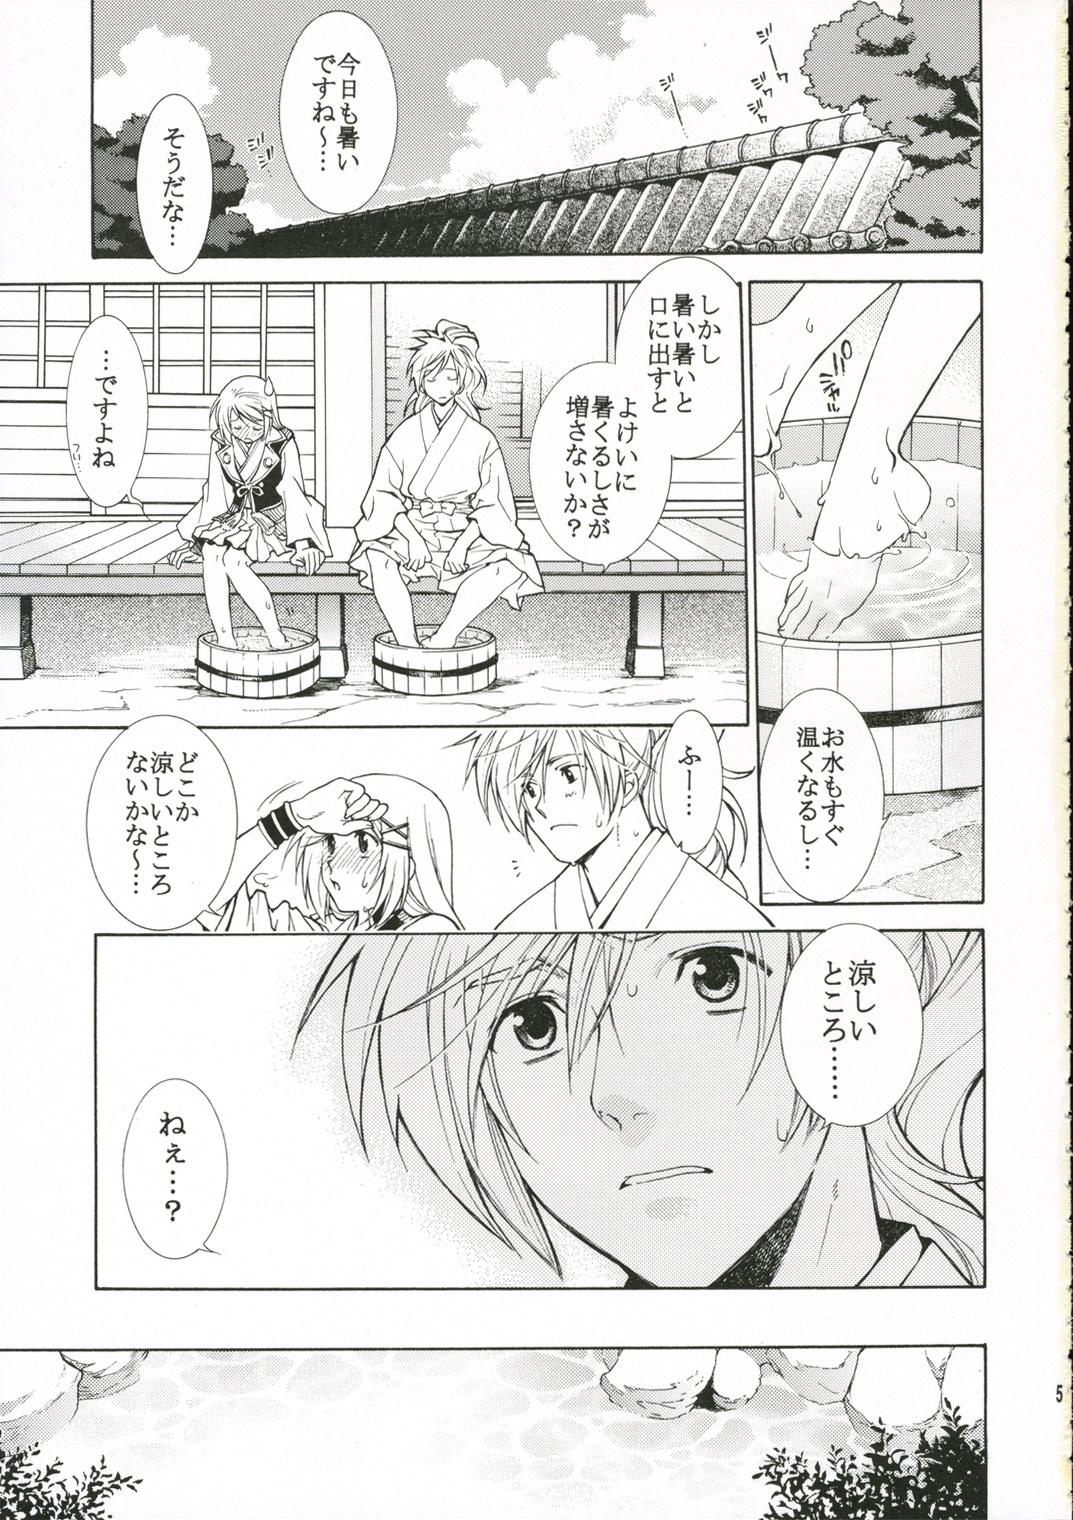 Spooning Hitoyasumi. - Harukanaru toki no naka de Blow Job - Page 4